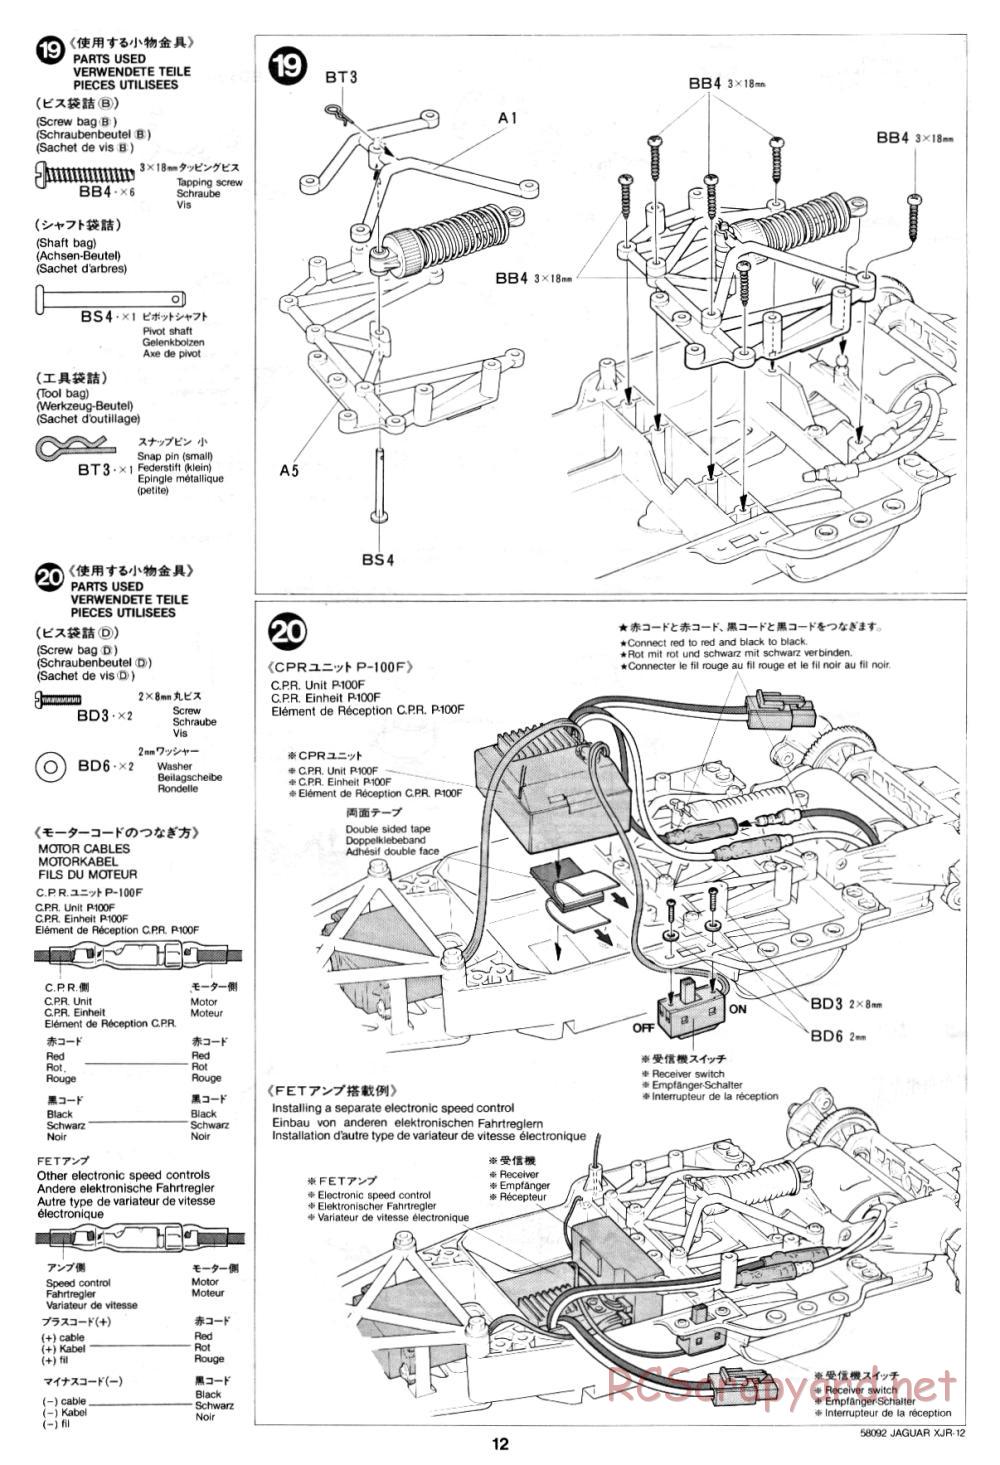 Tamiya - Jaguar XJR-12 - 58092 - Manual - Page 12